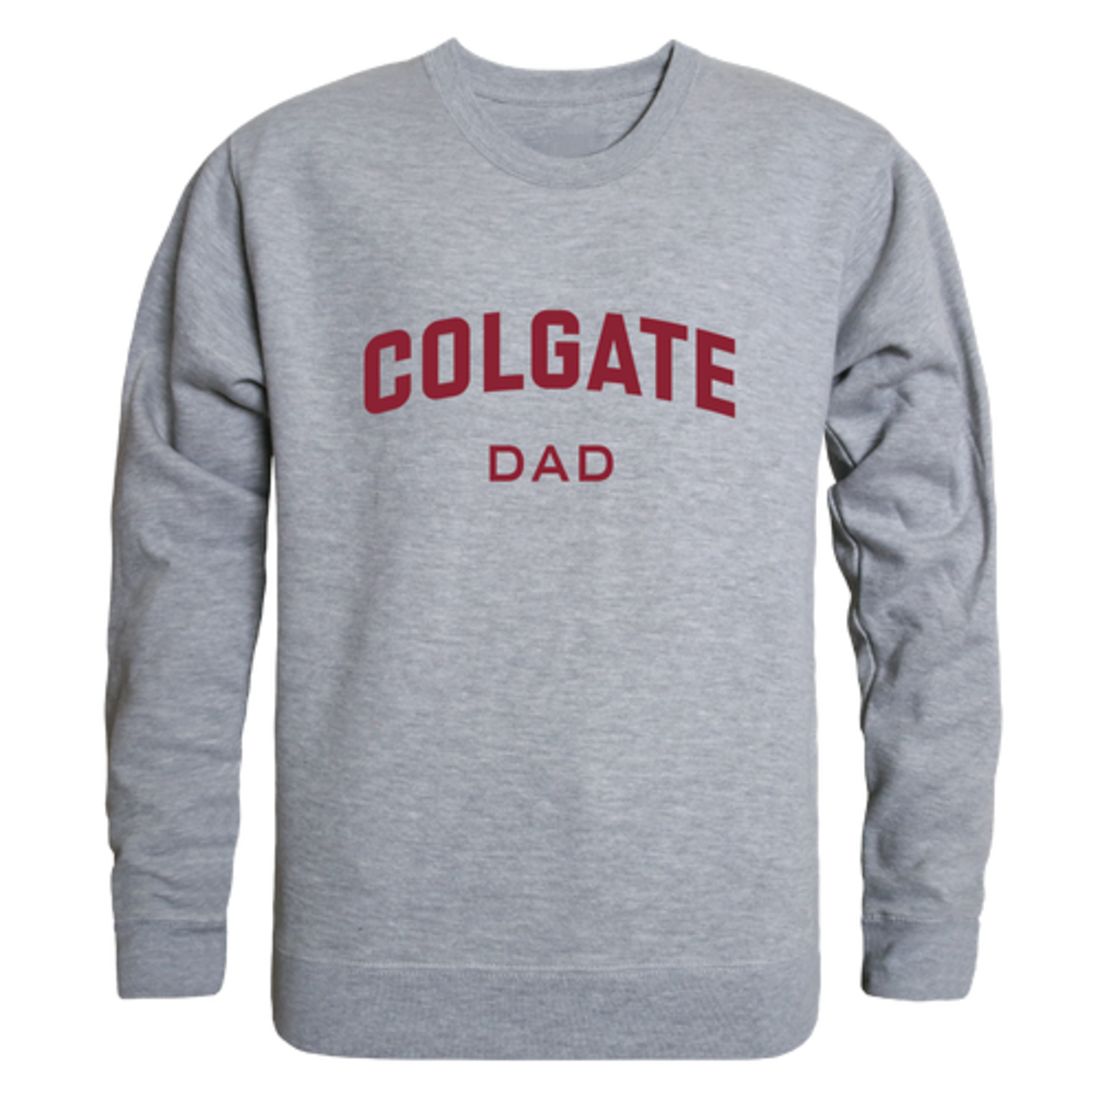 Colgate University Raider Dad Fleece Crewneck Pullover Sweatshirt Heather Grey-Campus-Wardrobe